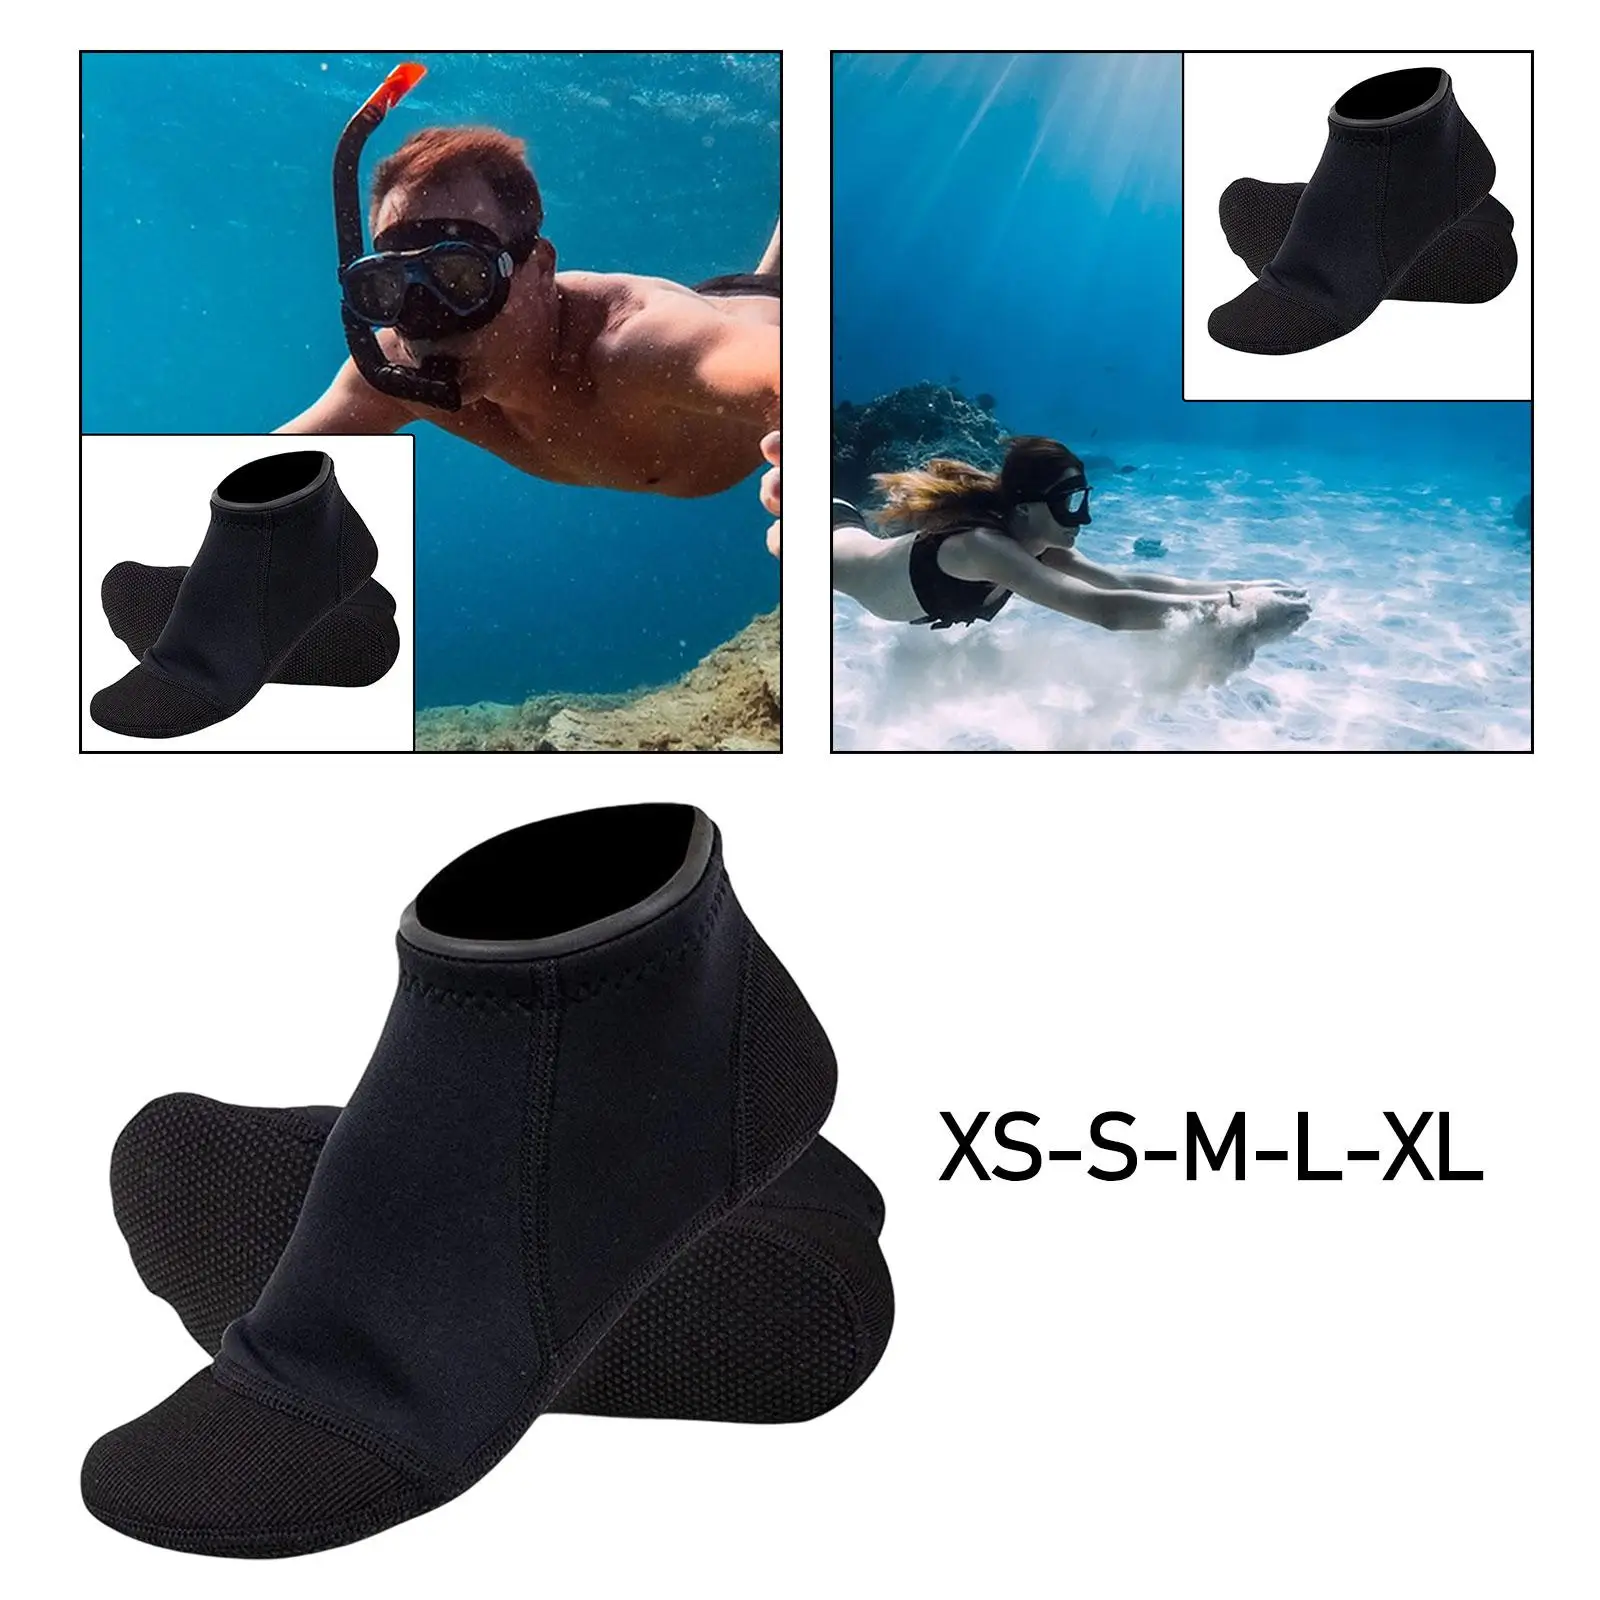 Pair of 3mm Neoprene Socks Snorkeling Scratch Proof Nonslip Surfing Booties Scuba Diving Socks for Outdoor Activities Rafting